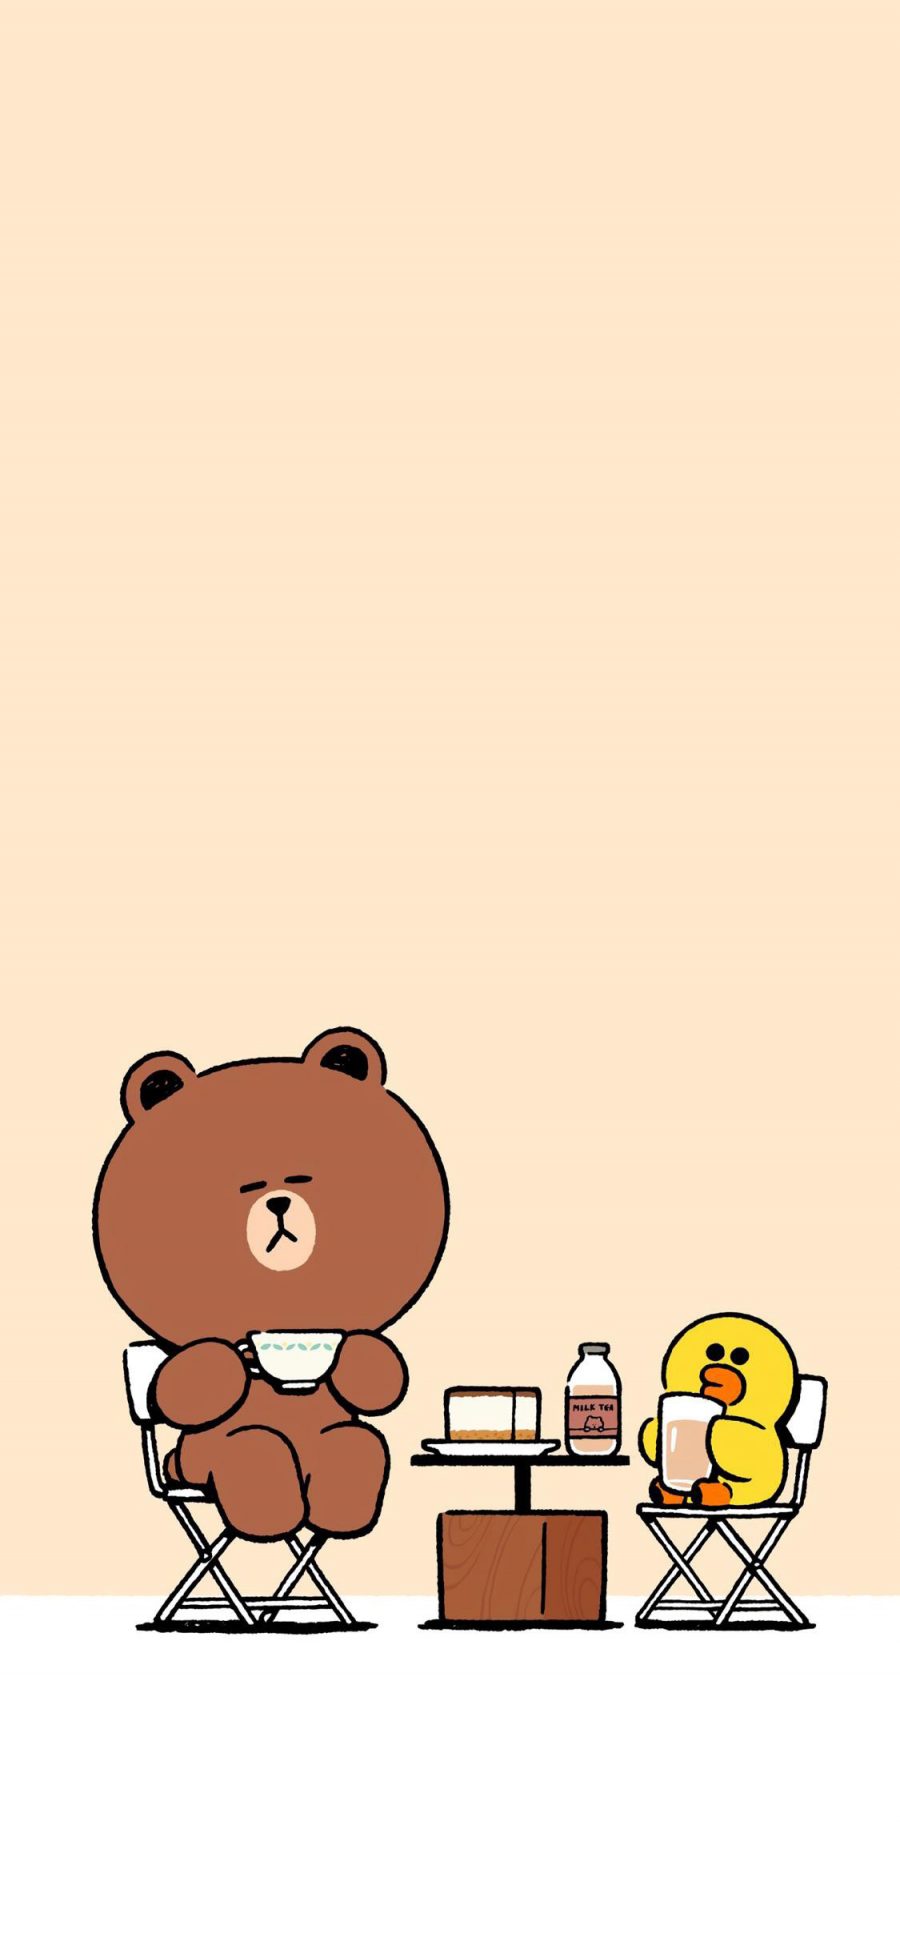 [2436×1125]linefriends 布朗熊 萨莉鸡 卡通 下午茶 苹果手机动漫壁纸图片